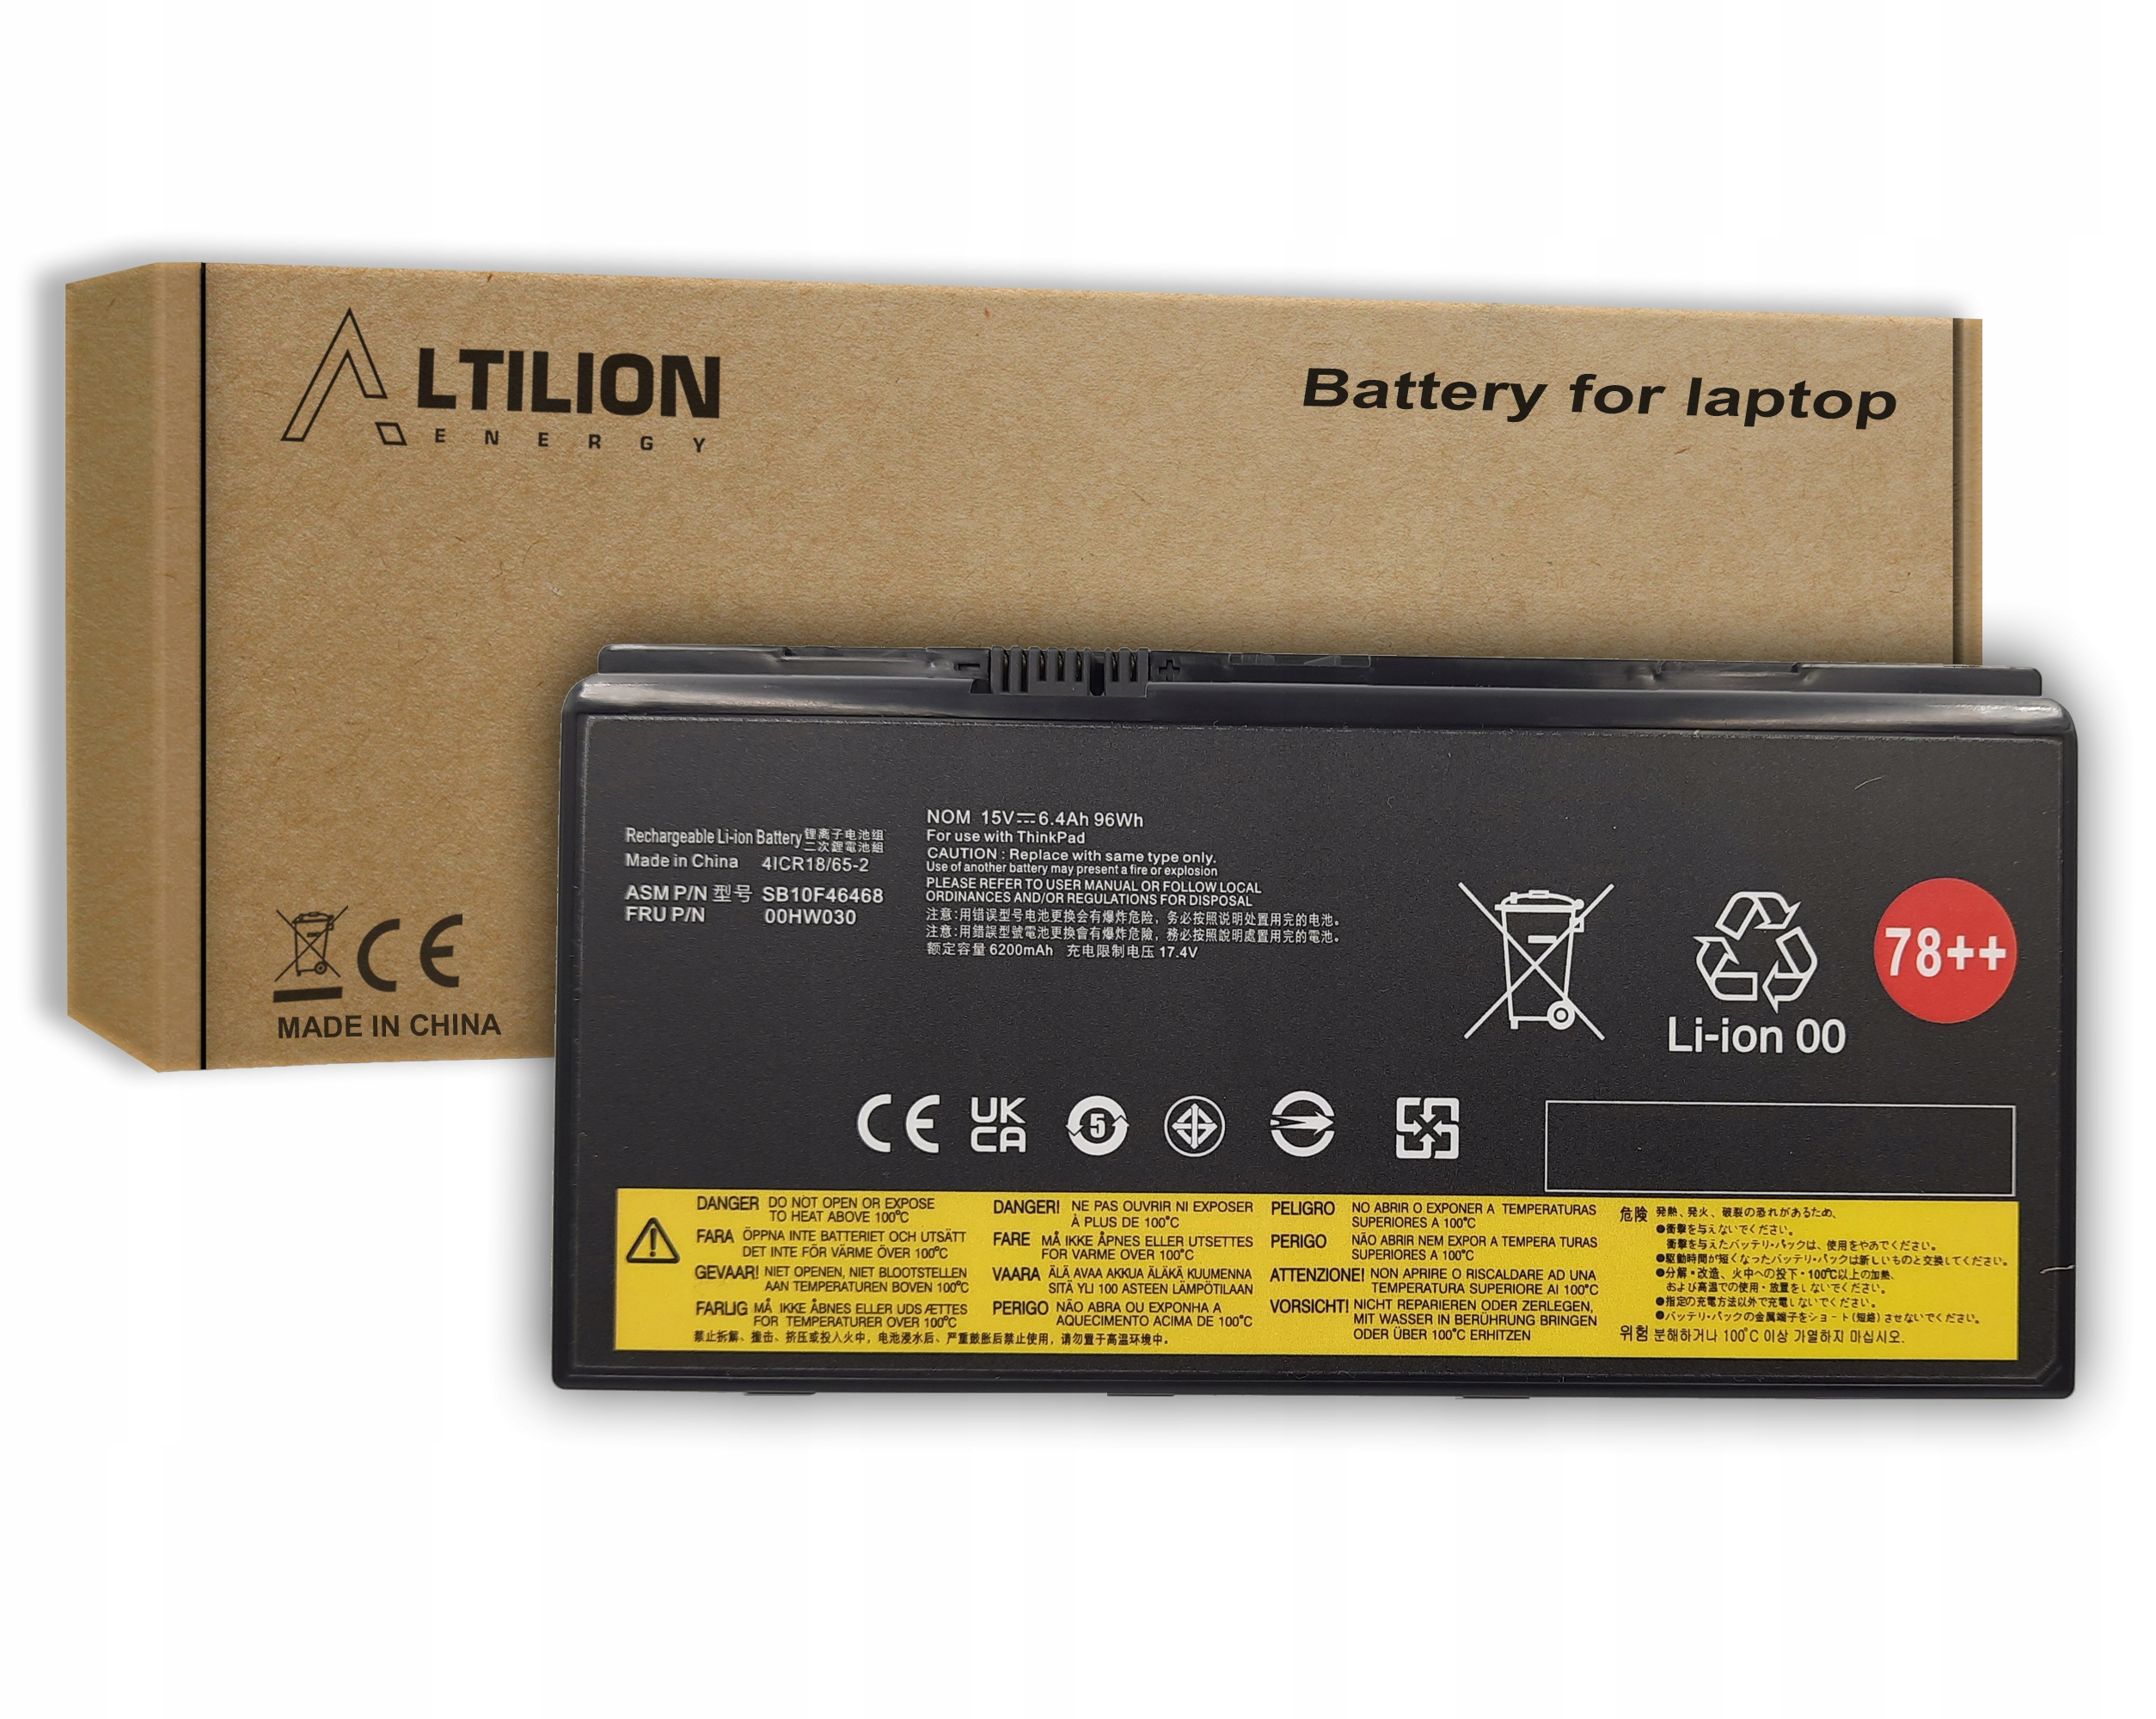 Baterie 00HW030 01AV451 pro Lenovo ThinkPad P70 P71